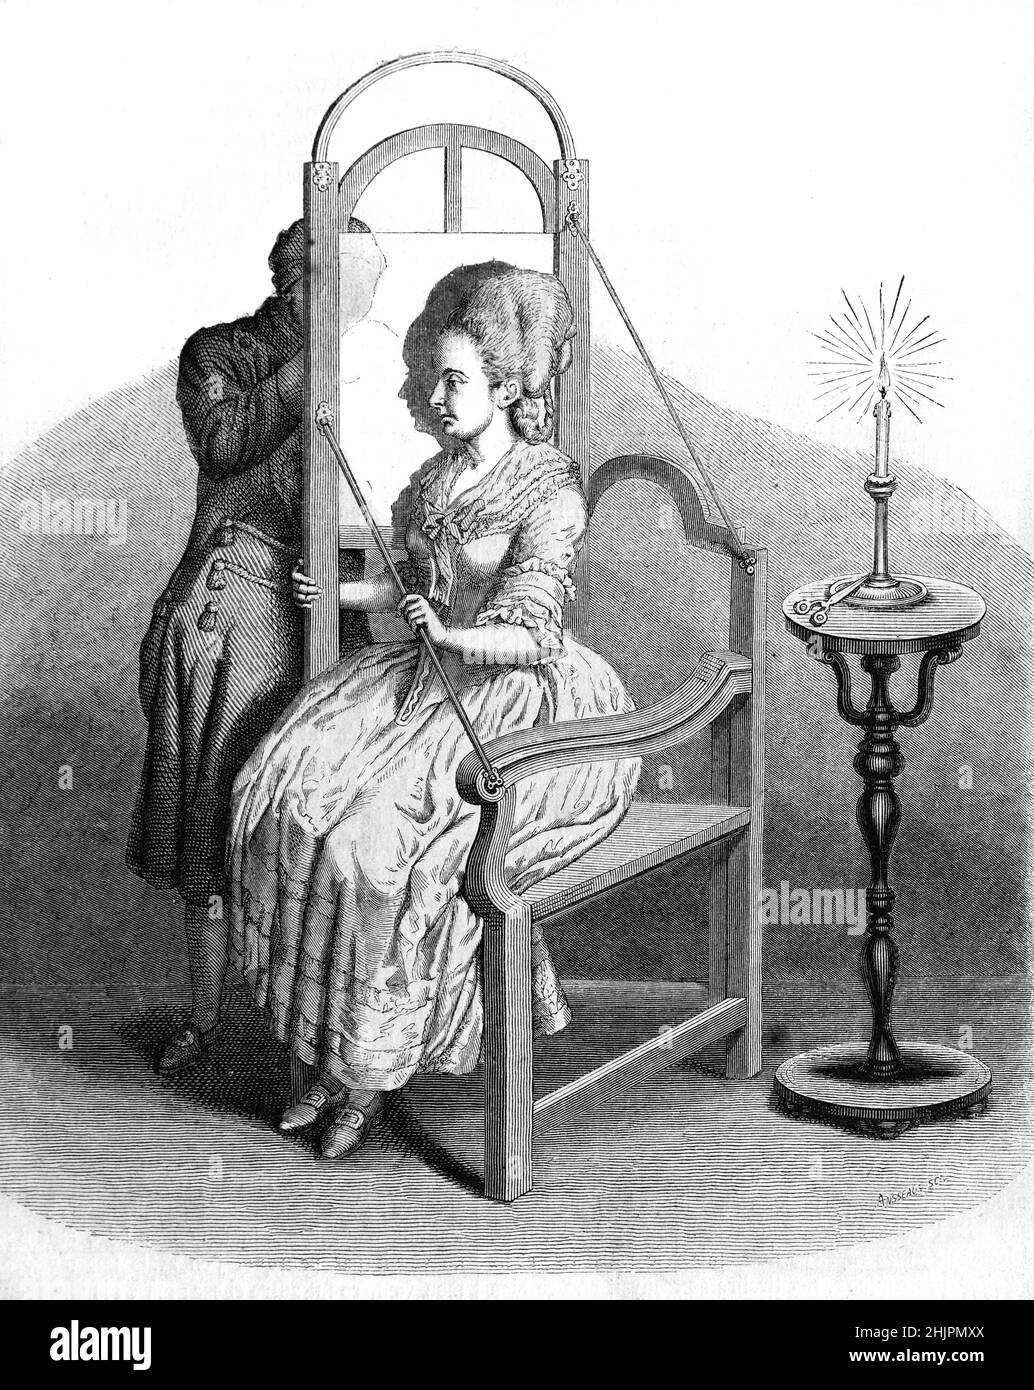 Artiste dessin d'une silhouette d'une femme assise à l'aide d'une machine à silhouettes avec une bougie.Gravure, illustration ou gravure vintage par Johann Rudolf Schellenberg. Banque D'Images